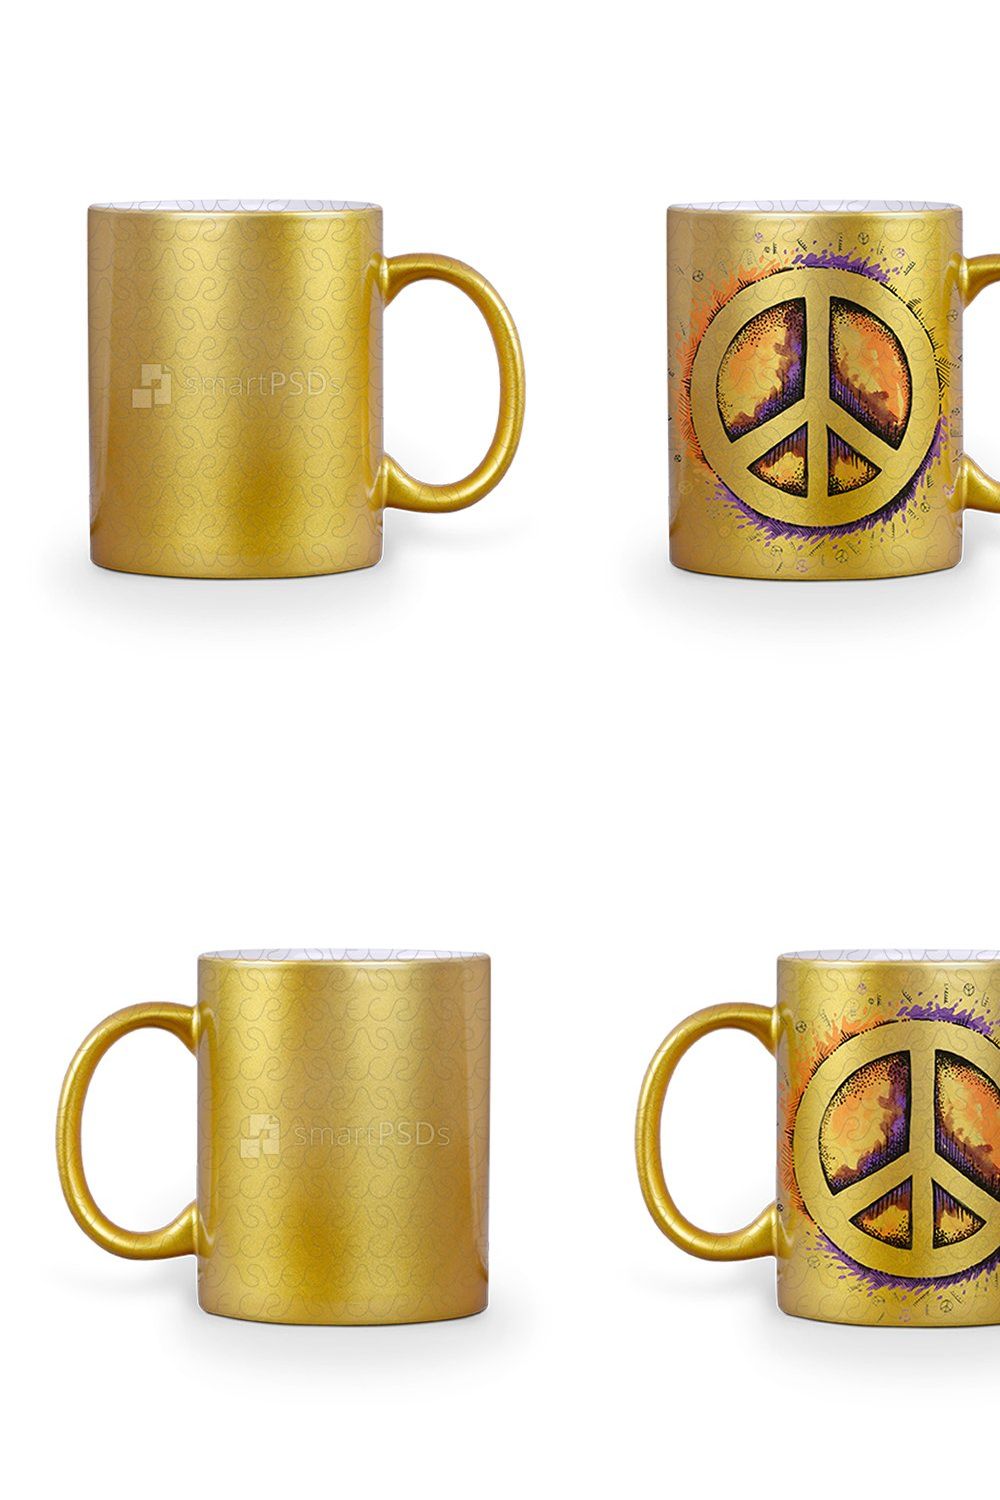 Golden Mug Design Mockup 2-Views pinterest preview image.